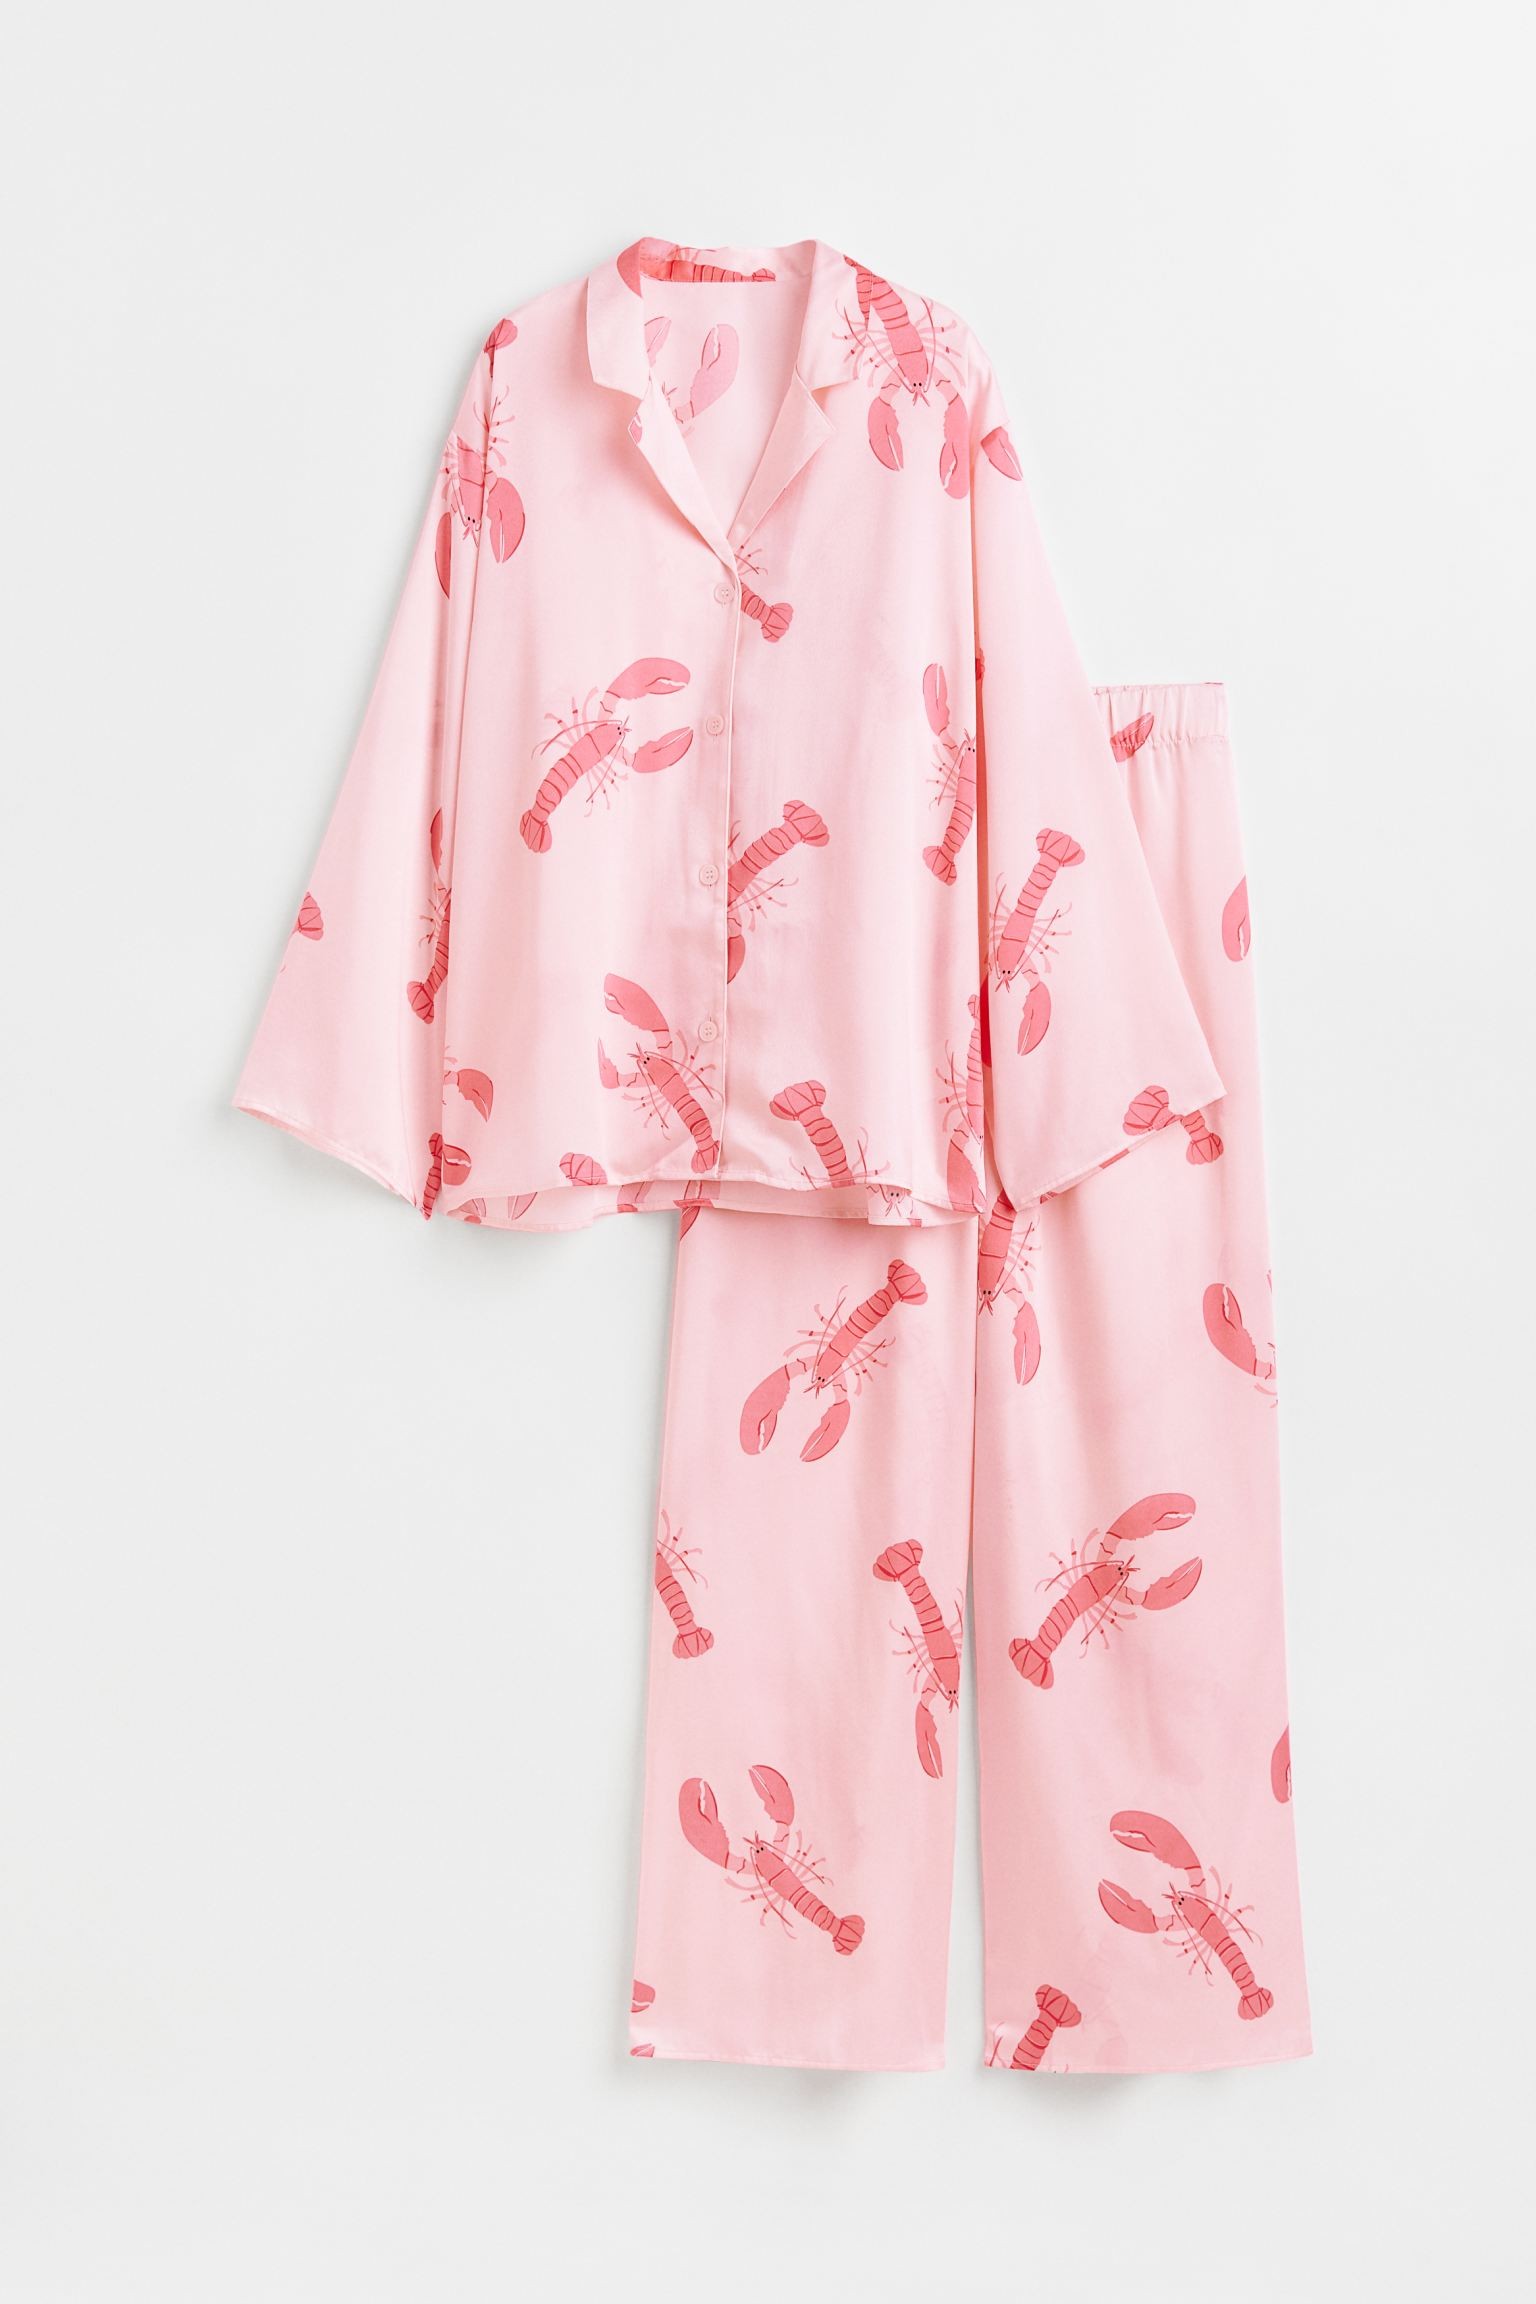 Пижама с рубашкой и штанами, Светло-розовый/Раки, Разные размеры